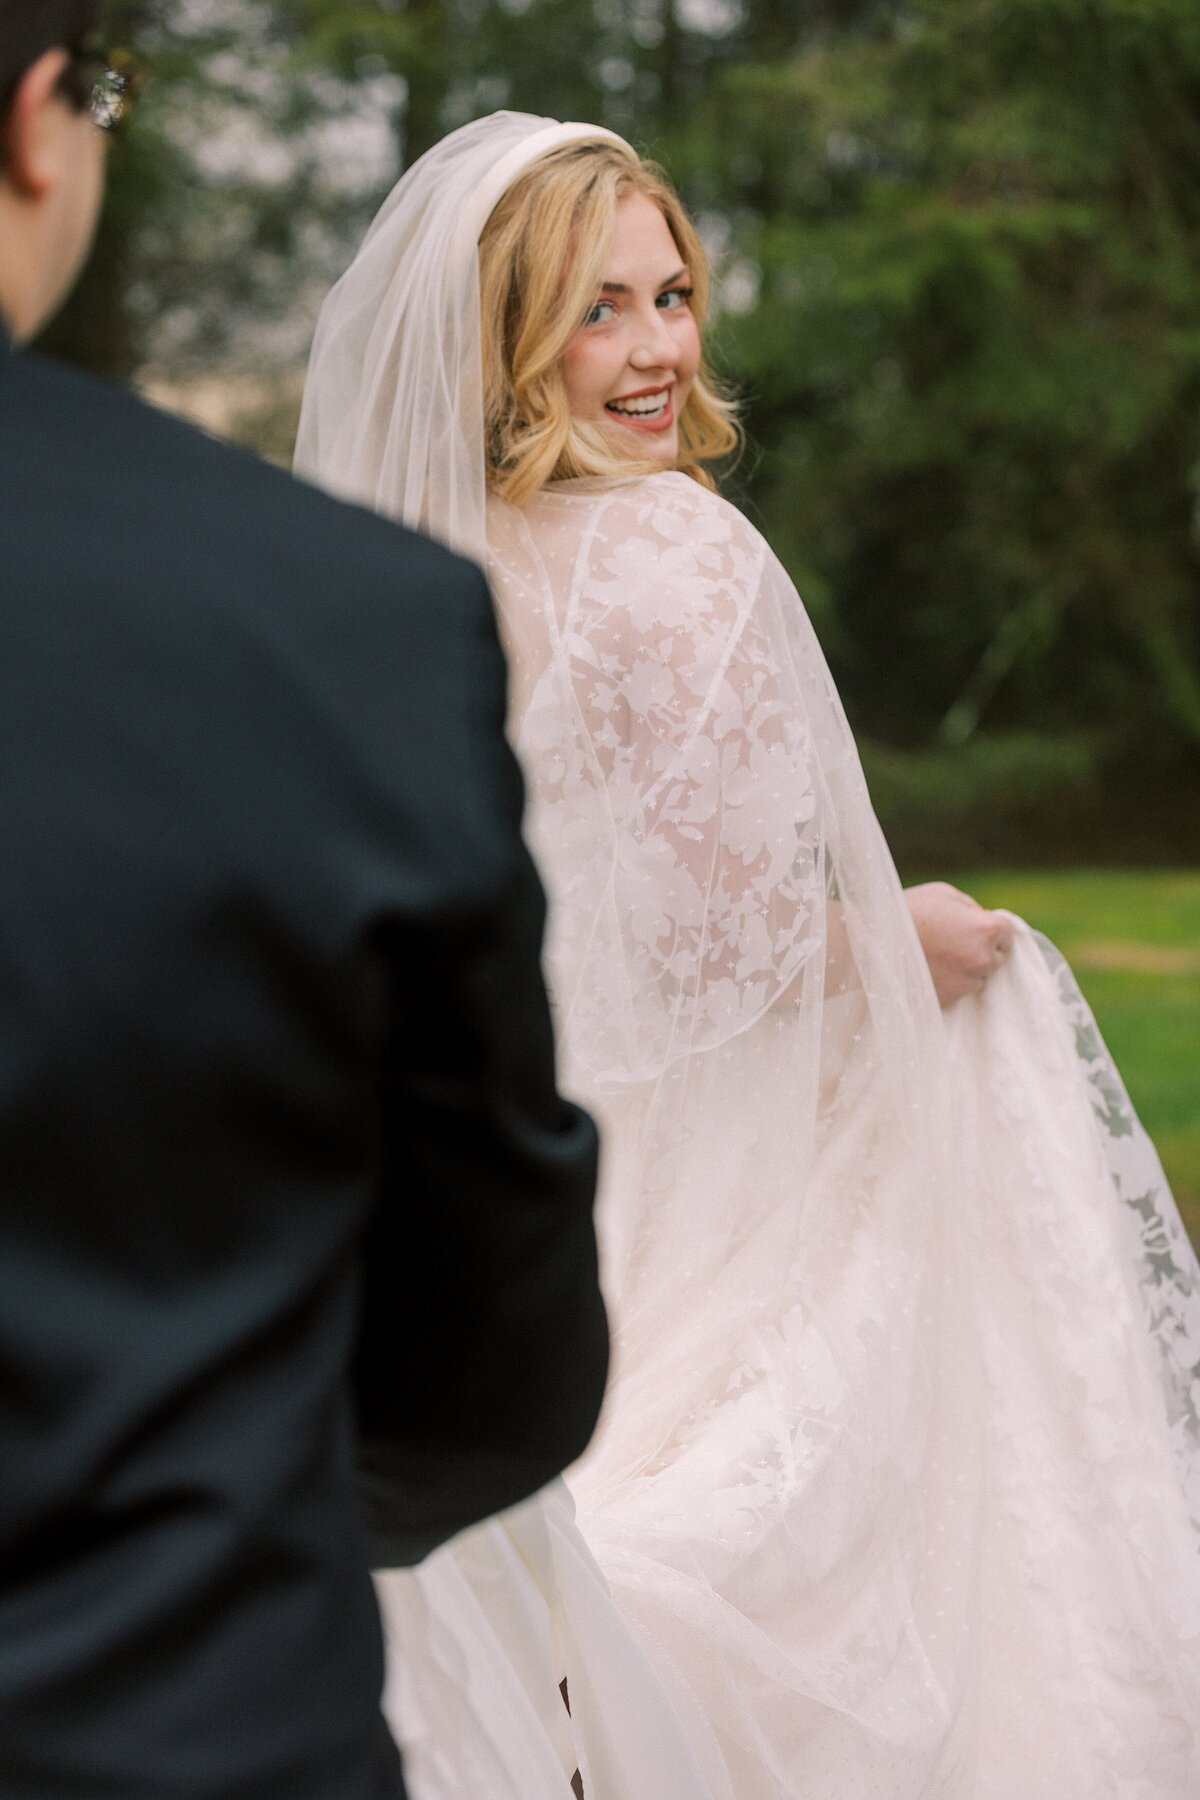 Bride looks over her shoulder as she walks